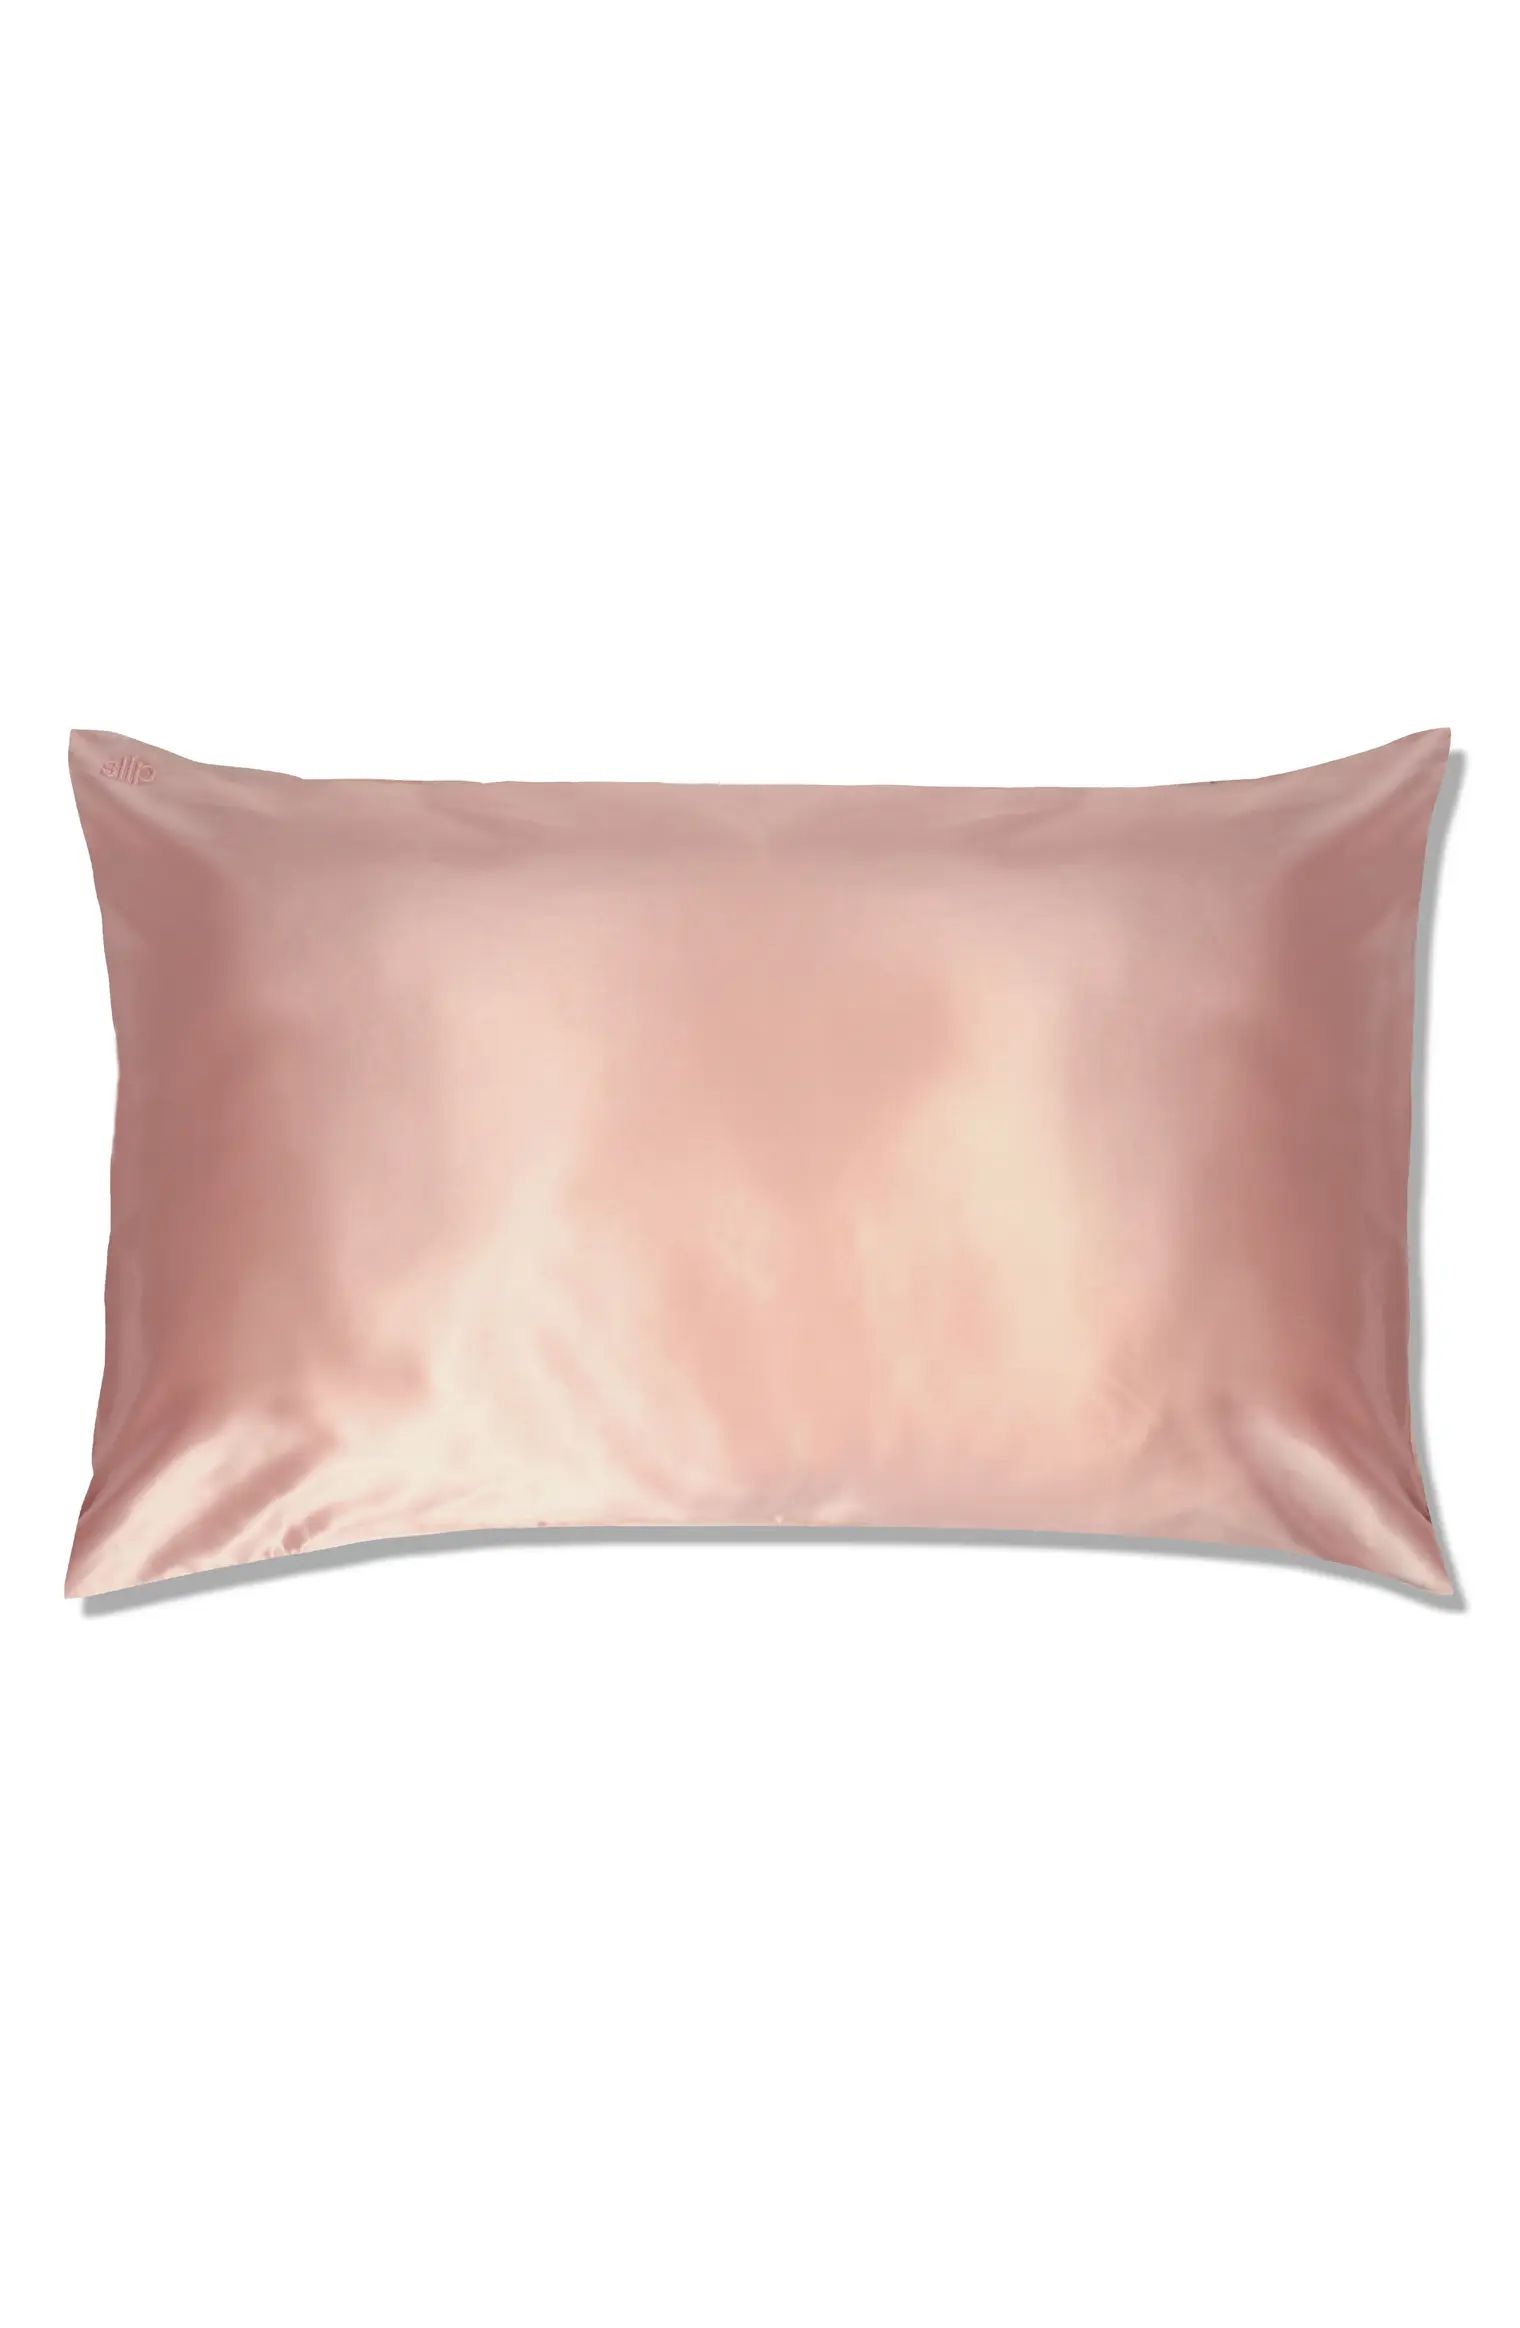 slip™ for beauty sleep Slipsilk™ Pure Silk Pillowcase | Nordstrom